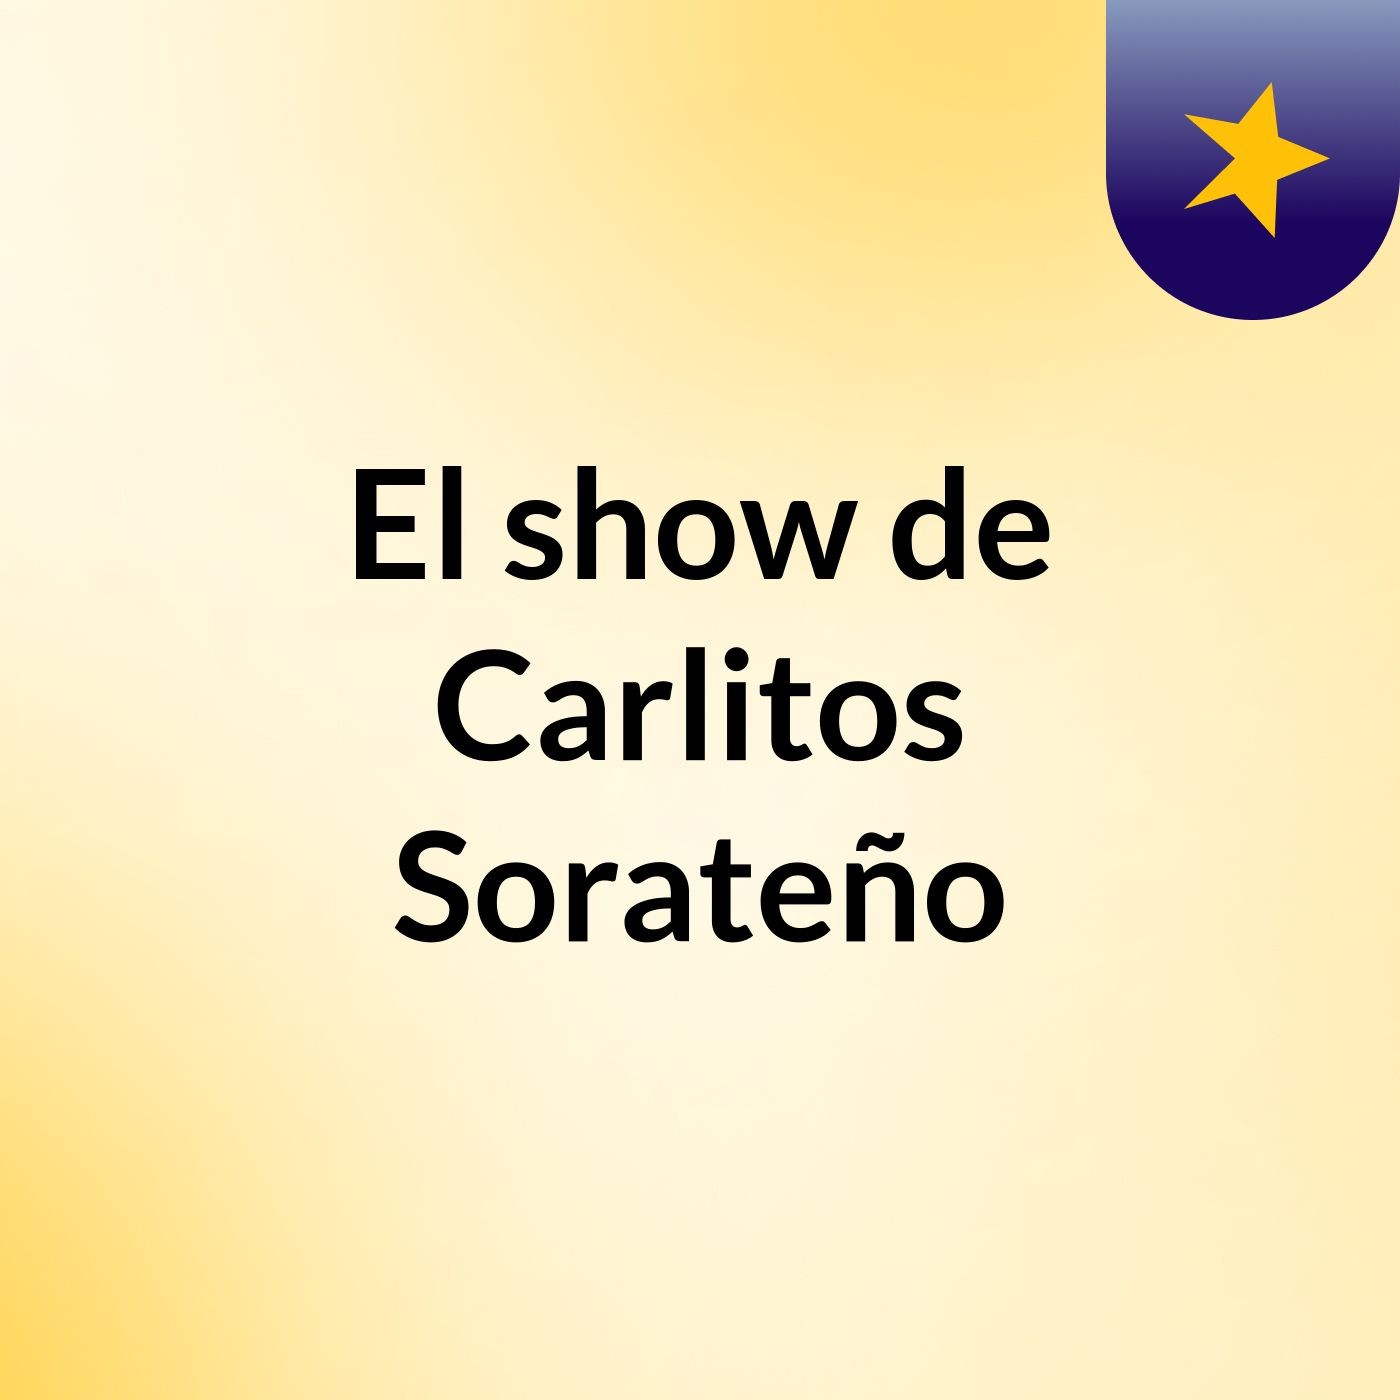 El show de Carlitos Sorateño